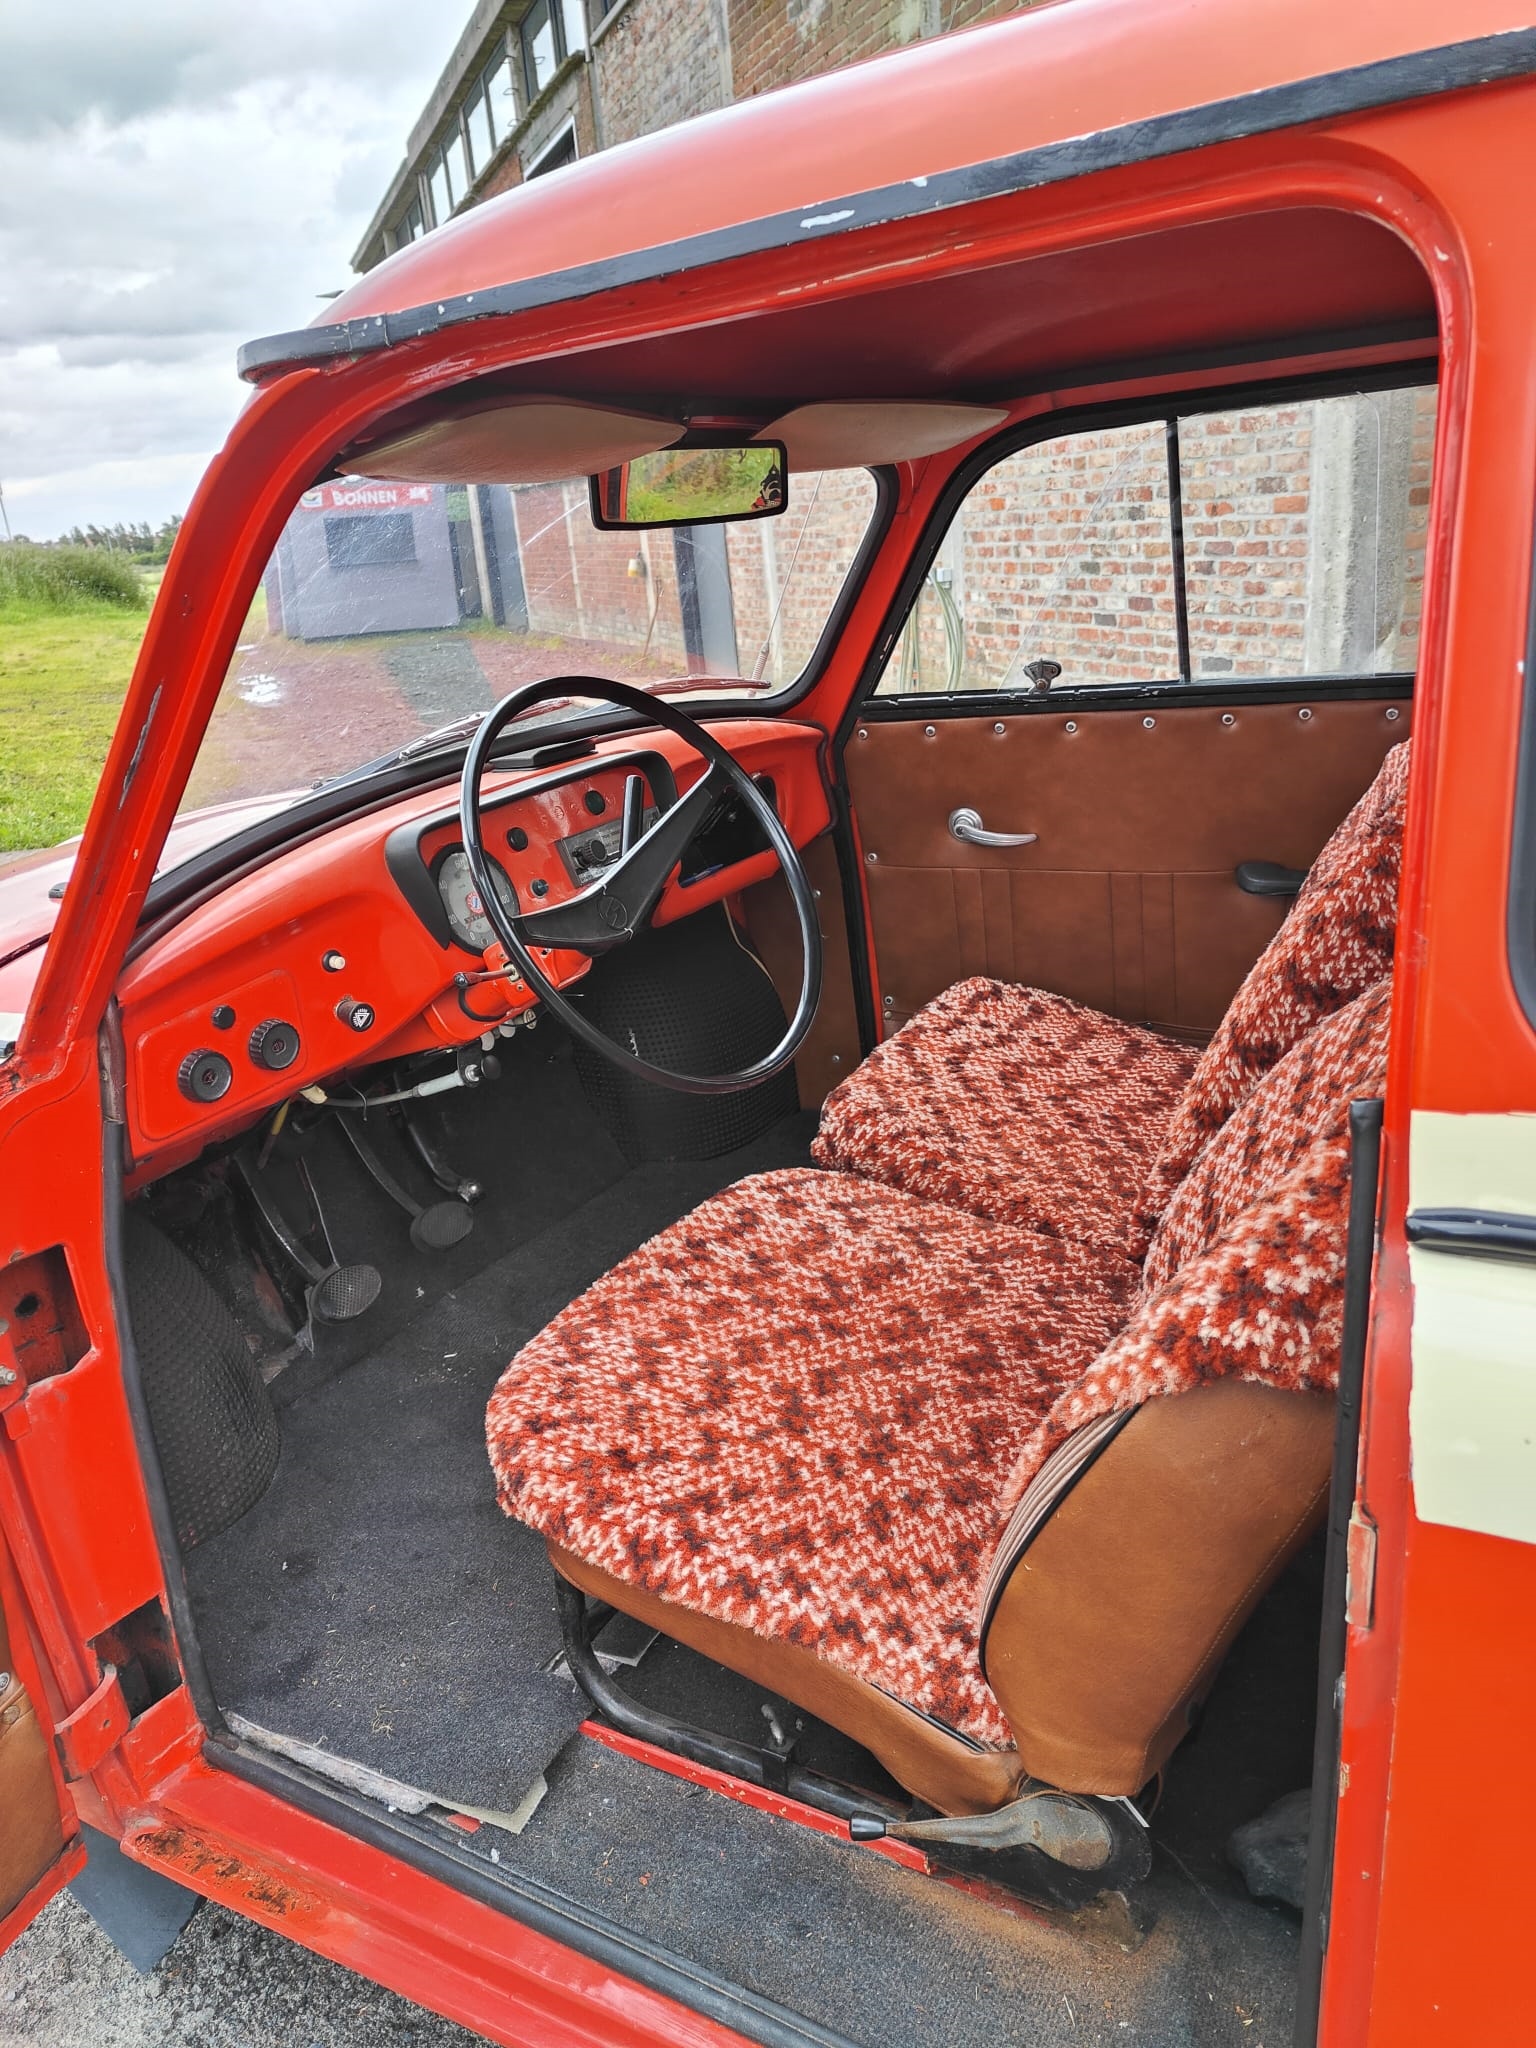 1959 Trabant P50 oldtimer te koop